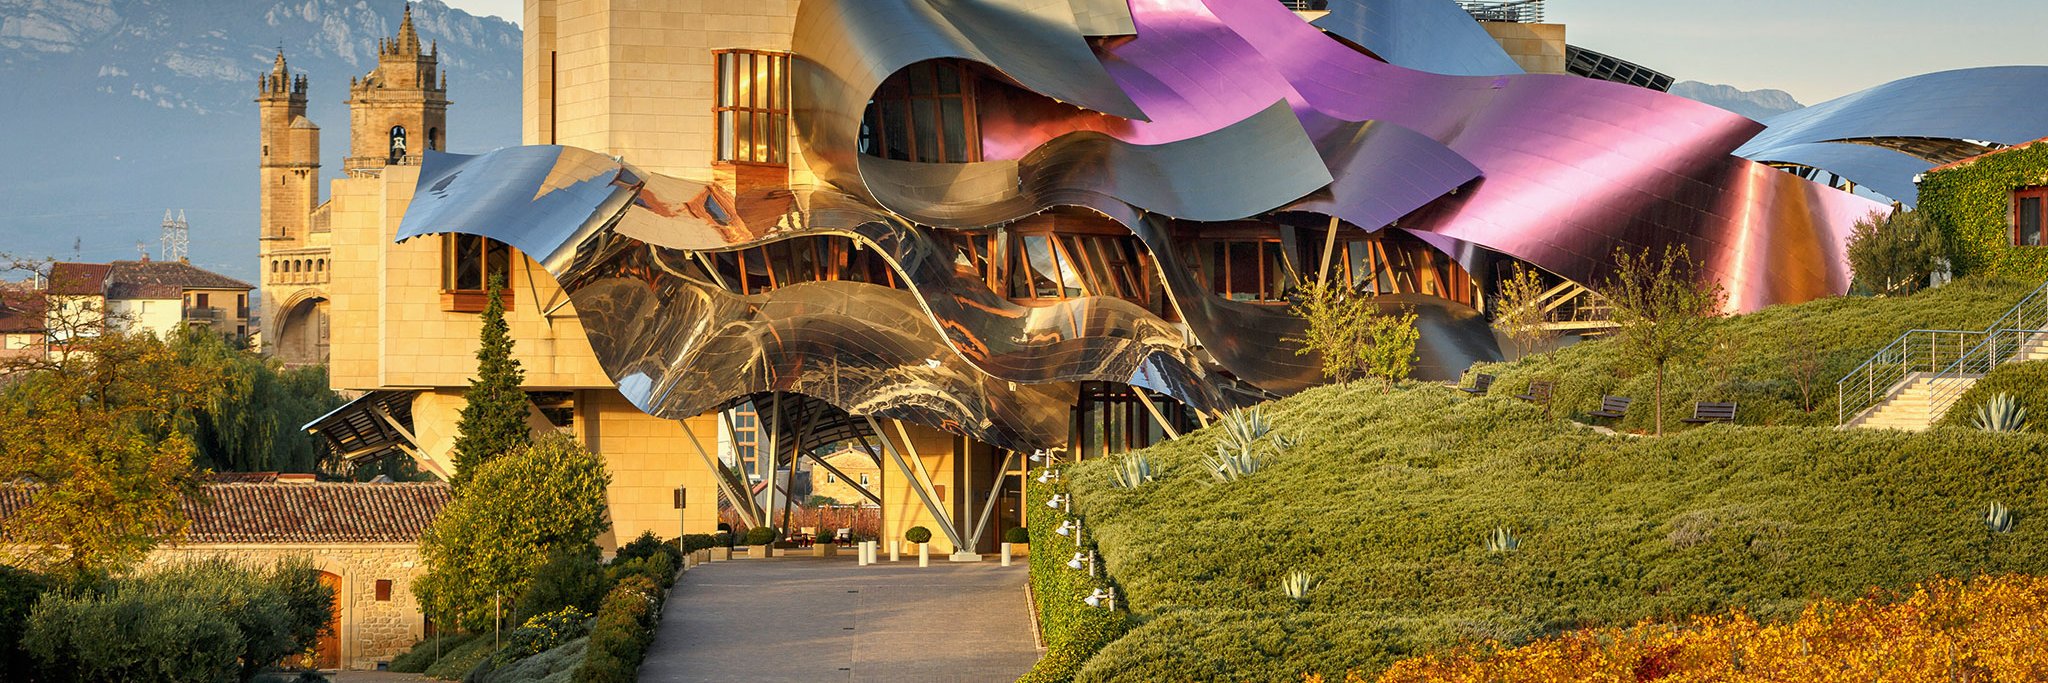 Das Hotel »Marqués de Riscal« gehört zu den Wahrzeichen der Region. Der spektakuläre Bau von Stararchitekt Frank O. Gehry wurde im Jahr 2006 eröffnet.